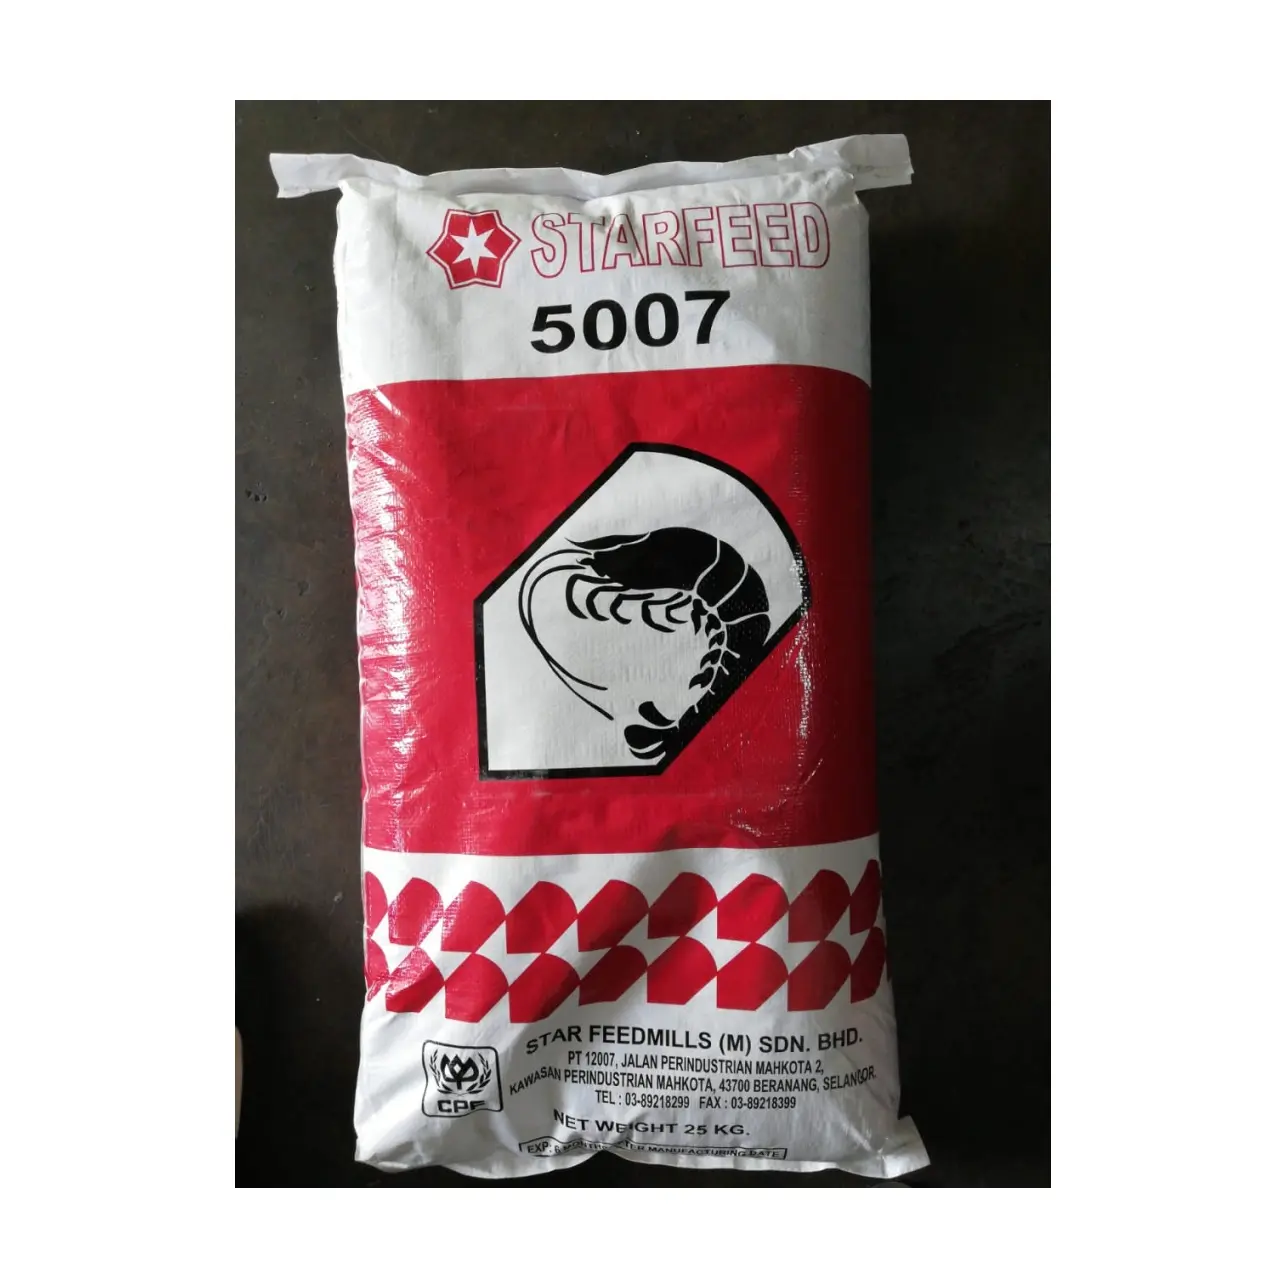 가방 포장 다크 다크 브라운 컬러 말레이시아 수유 제품 하루에 여러 번 사용 (5007) 블랙 타이거 새우 피드